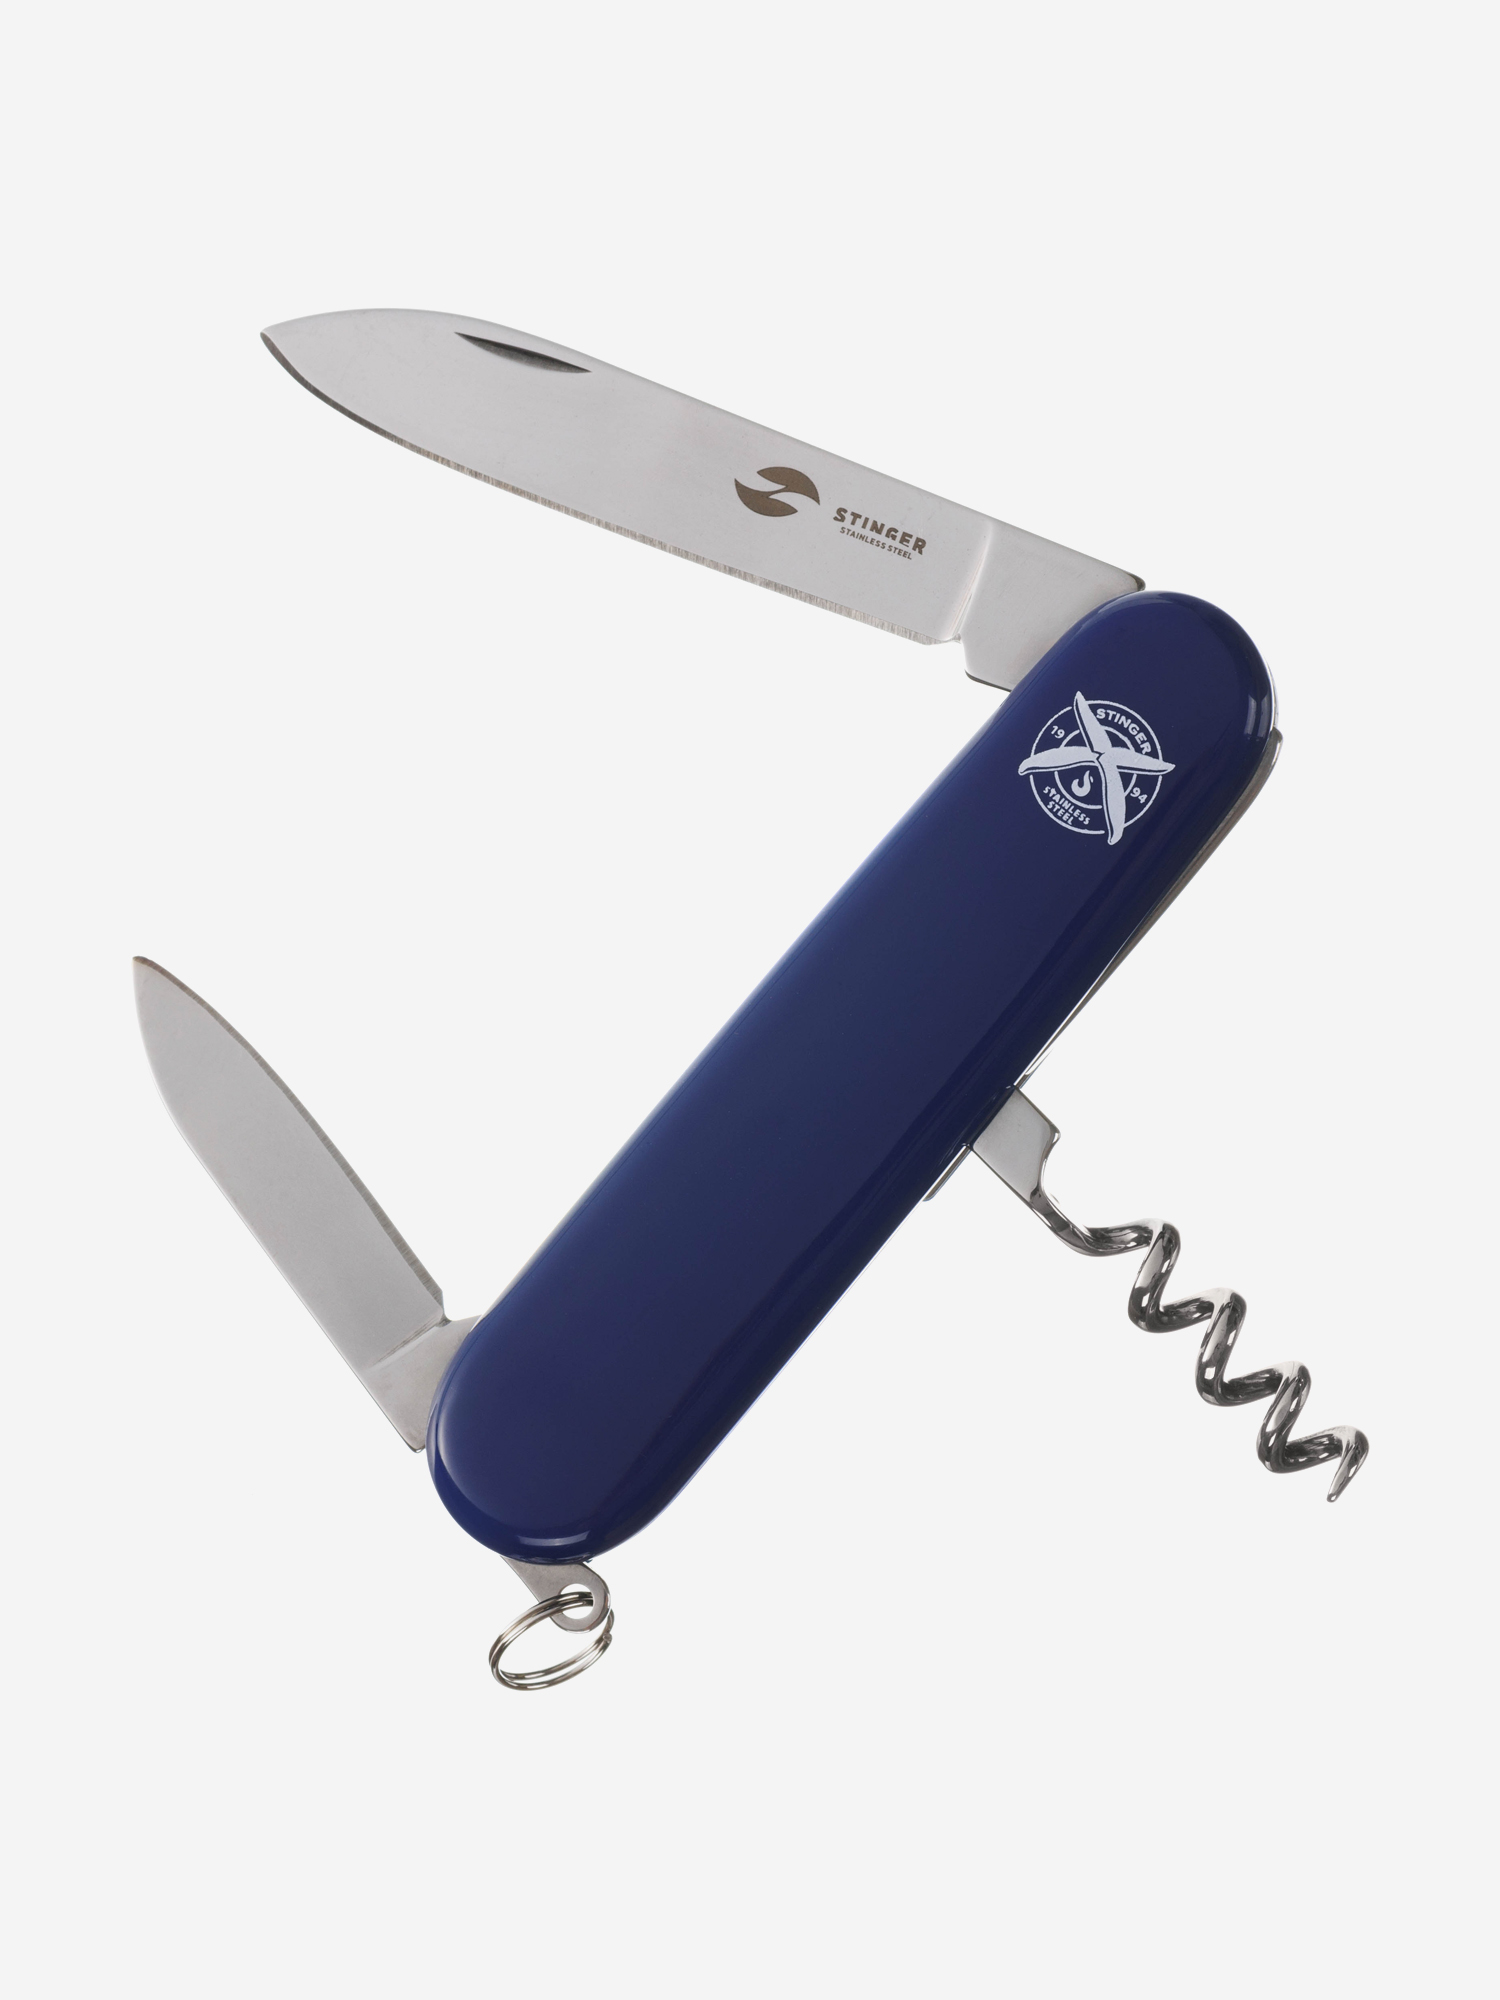 Нож перочинный Stinger, 90 мм, 4 функции, материал рукояти: АБС-пластик (синий), Синий термокружка stinger 0 42 л сталь пластик белый с принтом 7 4 x 6 7 x 22 4 см белый